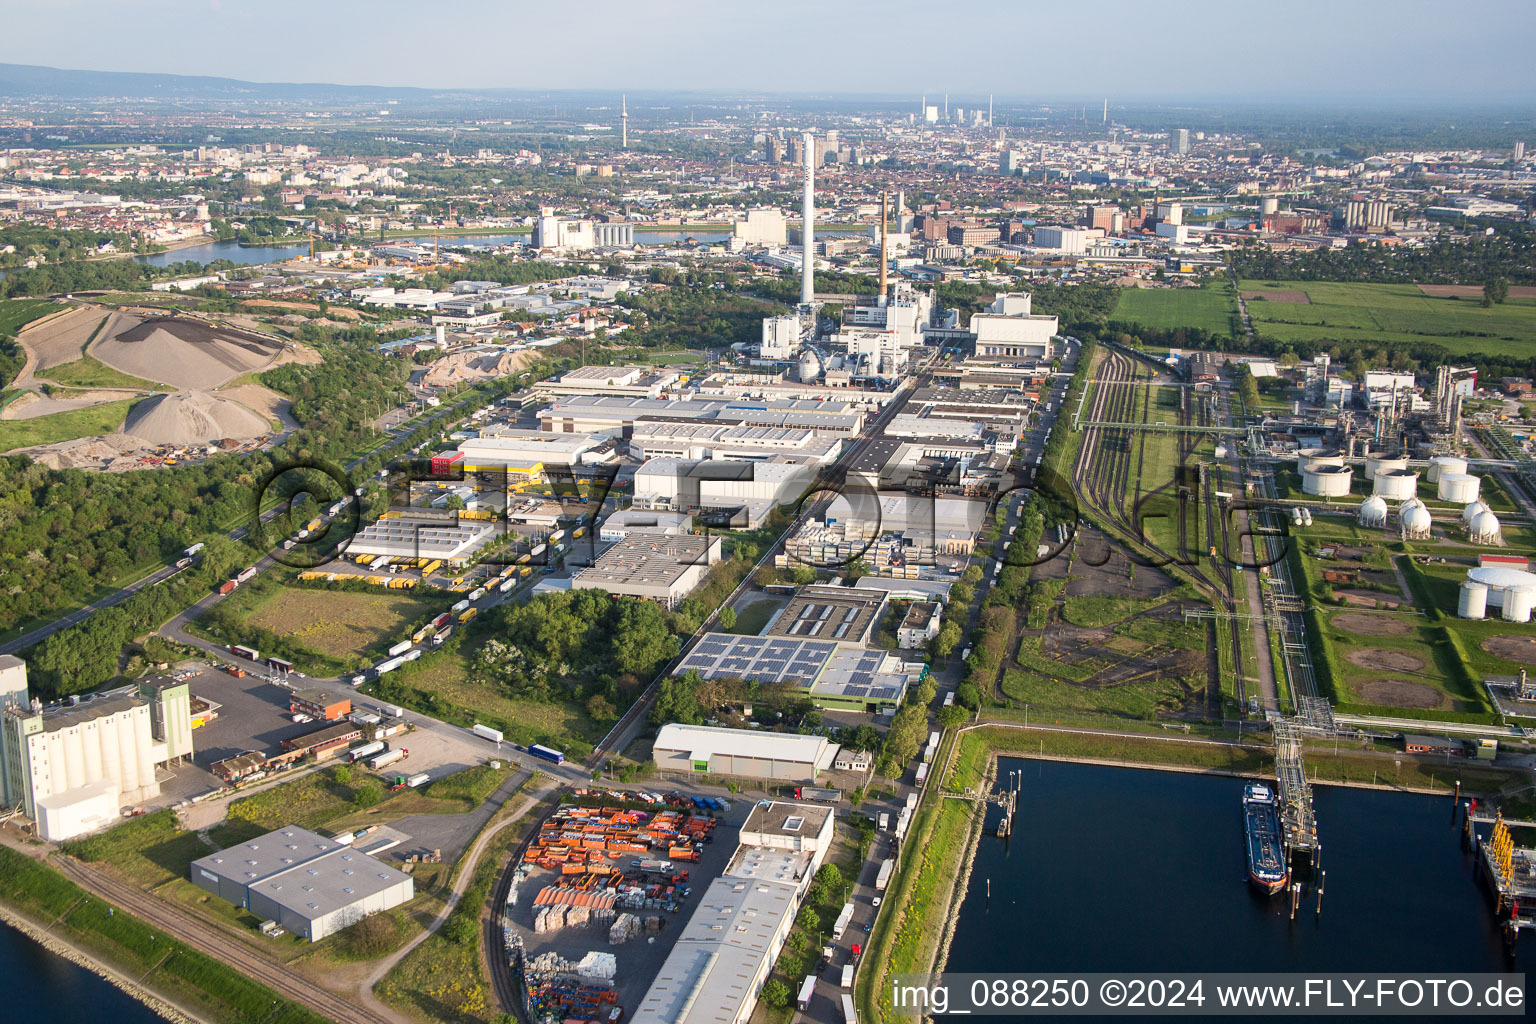 Vue aérienne de Locaux de l'usine MTG Bayer GmbH dans le quartier Industriehafen à le quartier Neckarstadt-West in Mannheim dans le département Bade-Wurtemberg, Allemagne